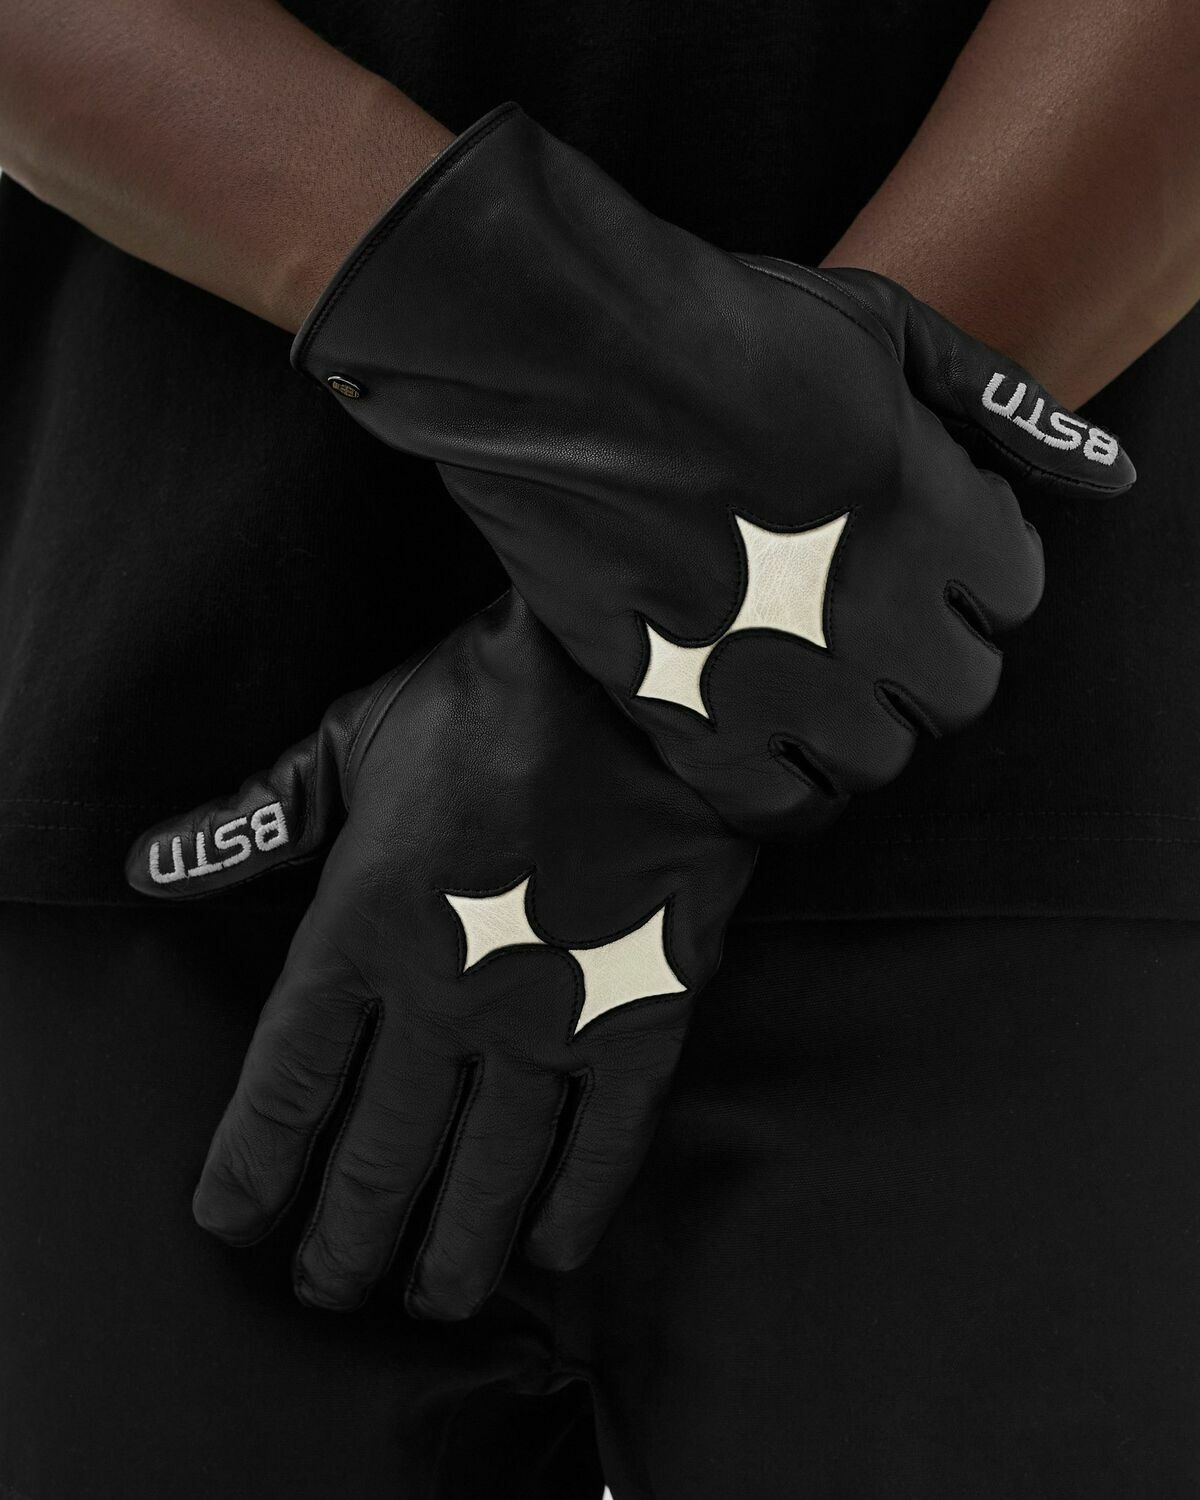 Bstn Brand Roeckl X Bstn Brand Touch Gloves Men Black - Mens - Gloves